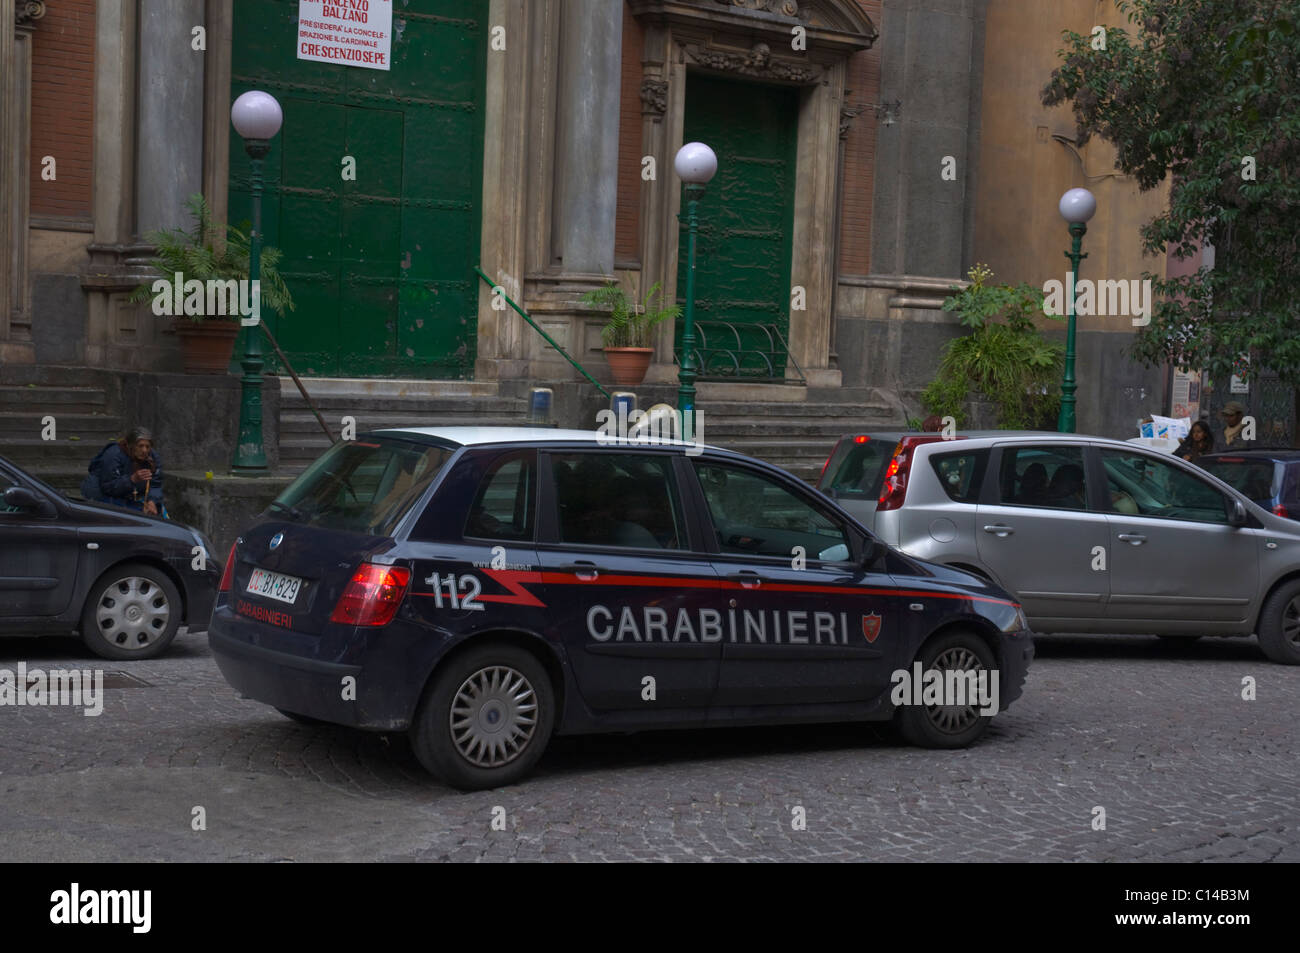 Carabinieri the police central Naples Campania Italy Europe Stock Photo